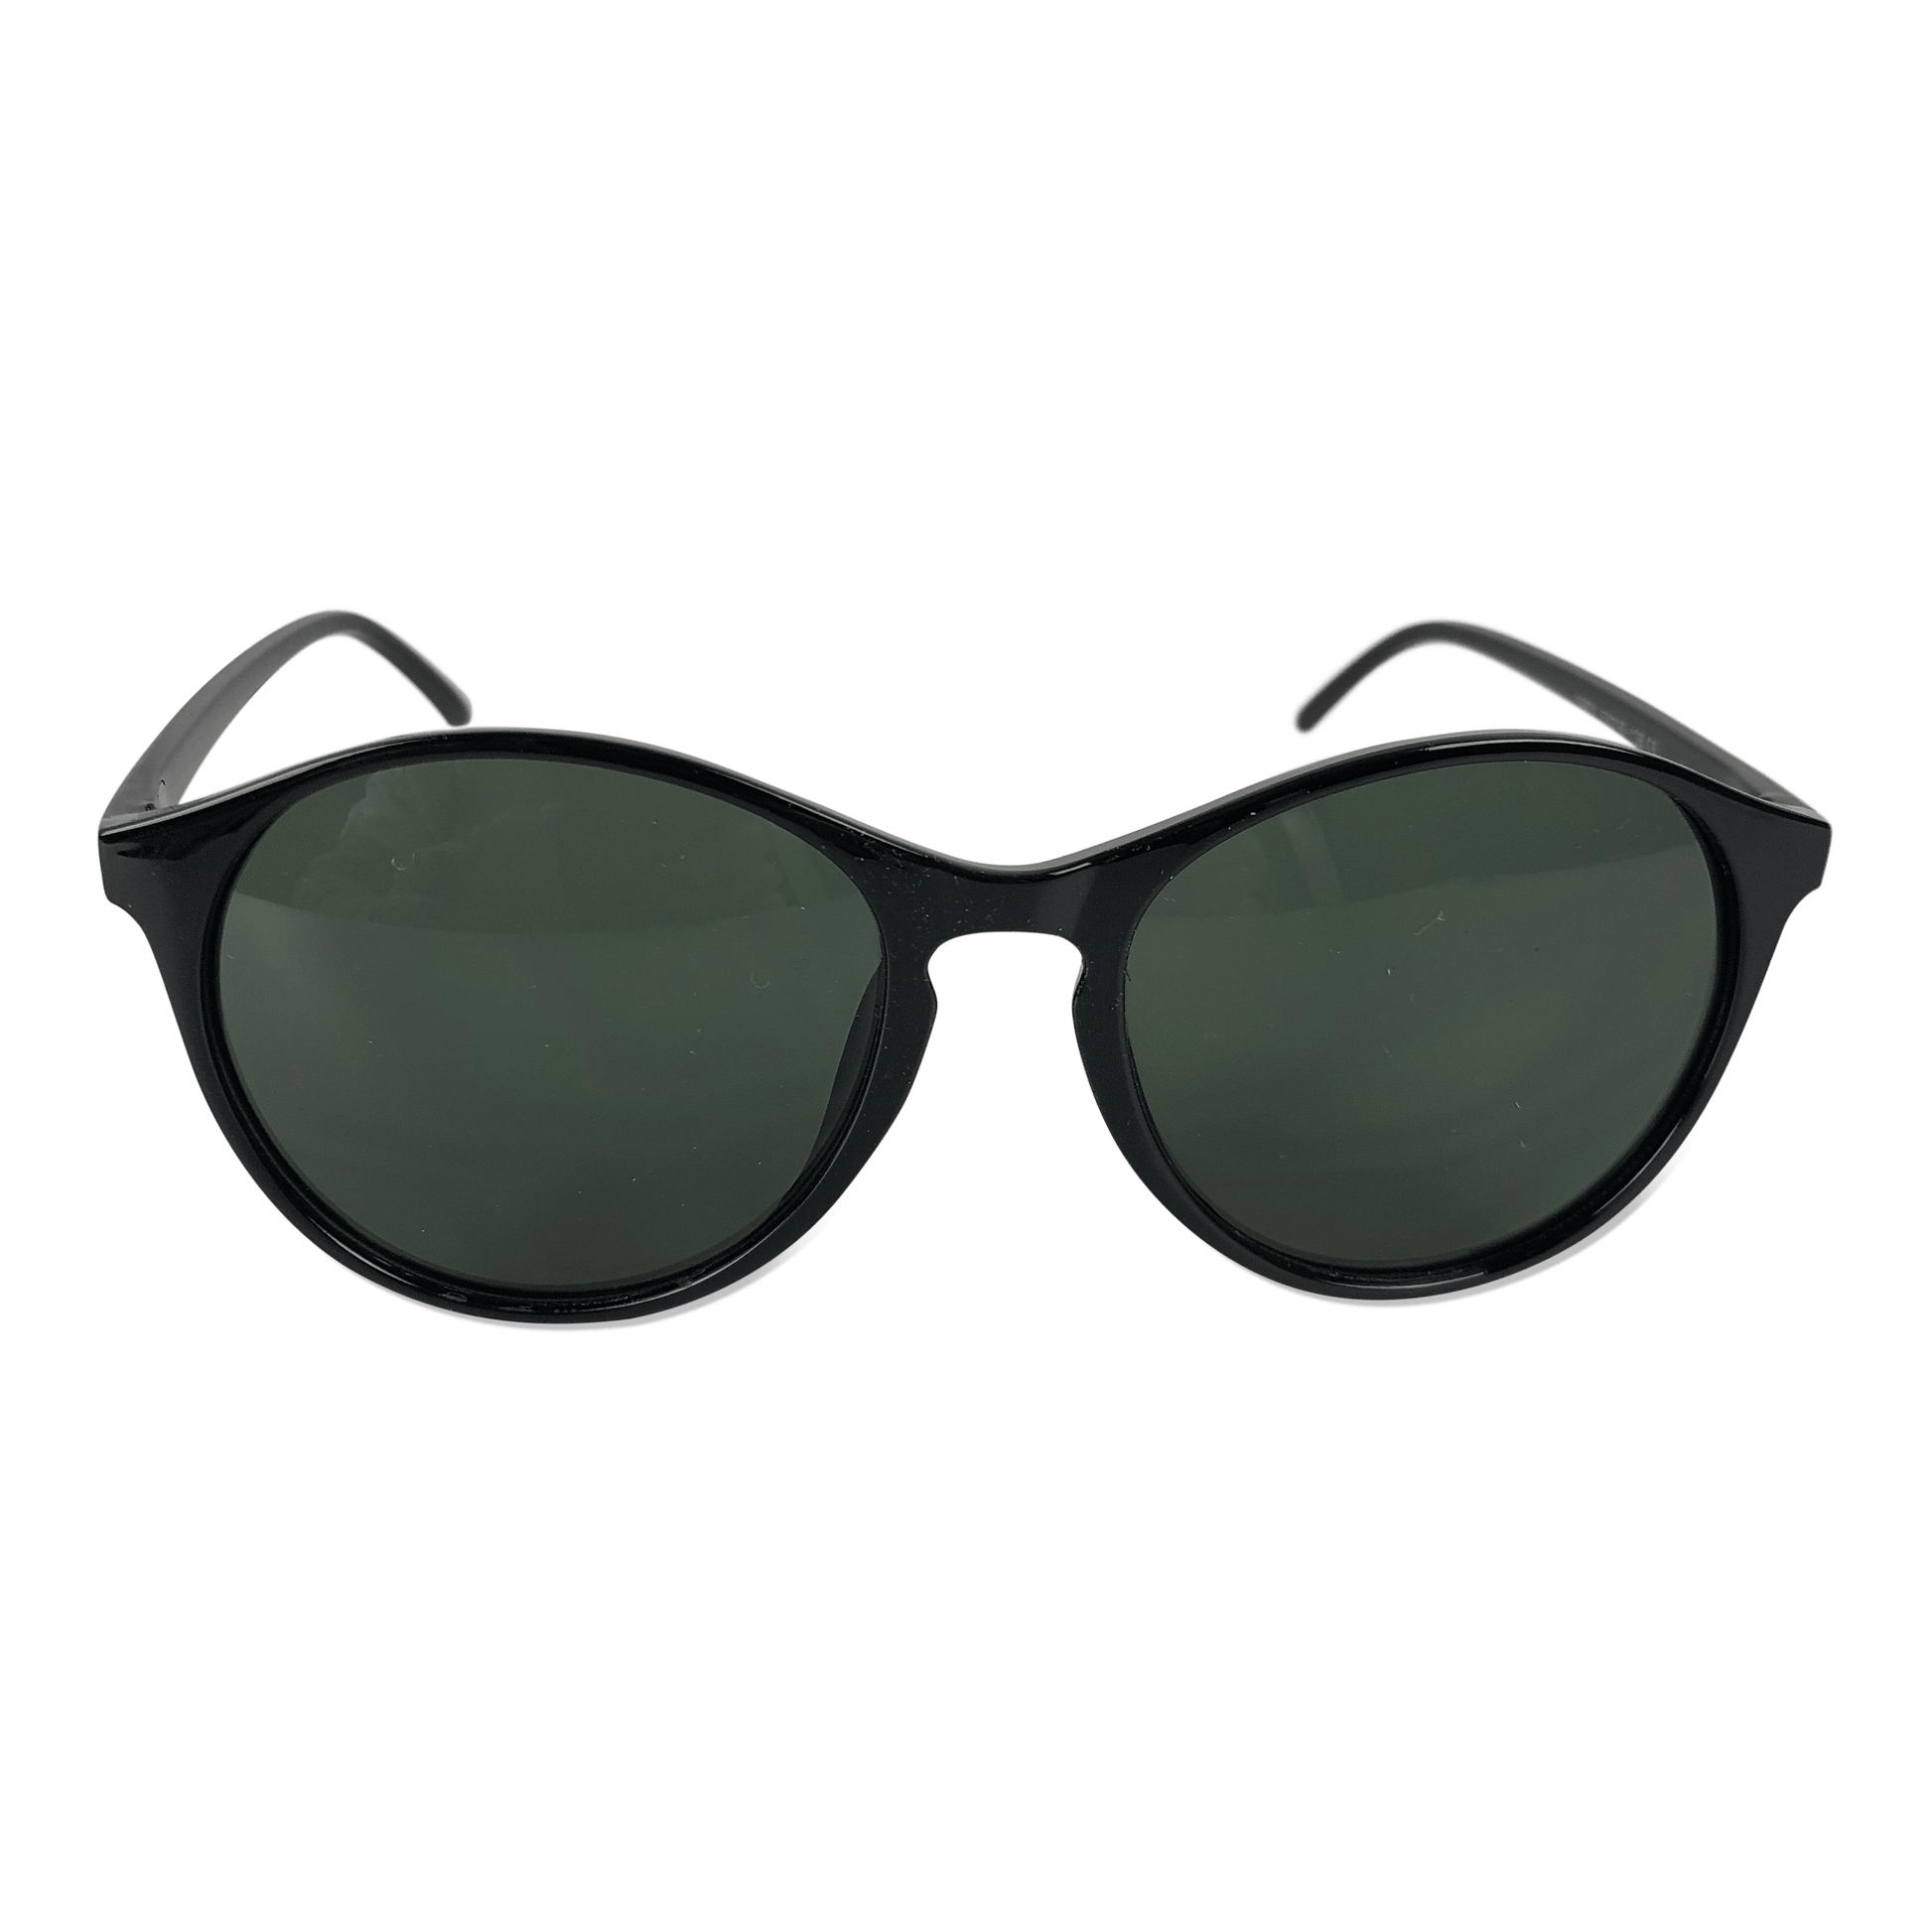 Køb billige solbriller | Stort 😎 – OtherStuff